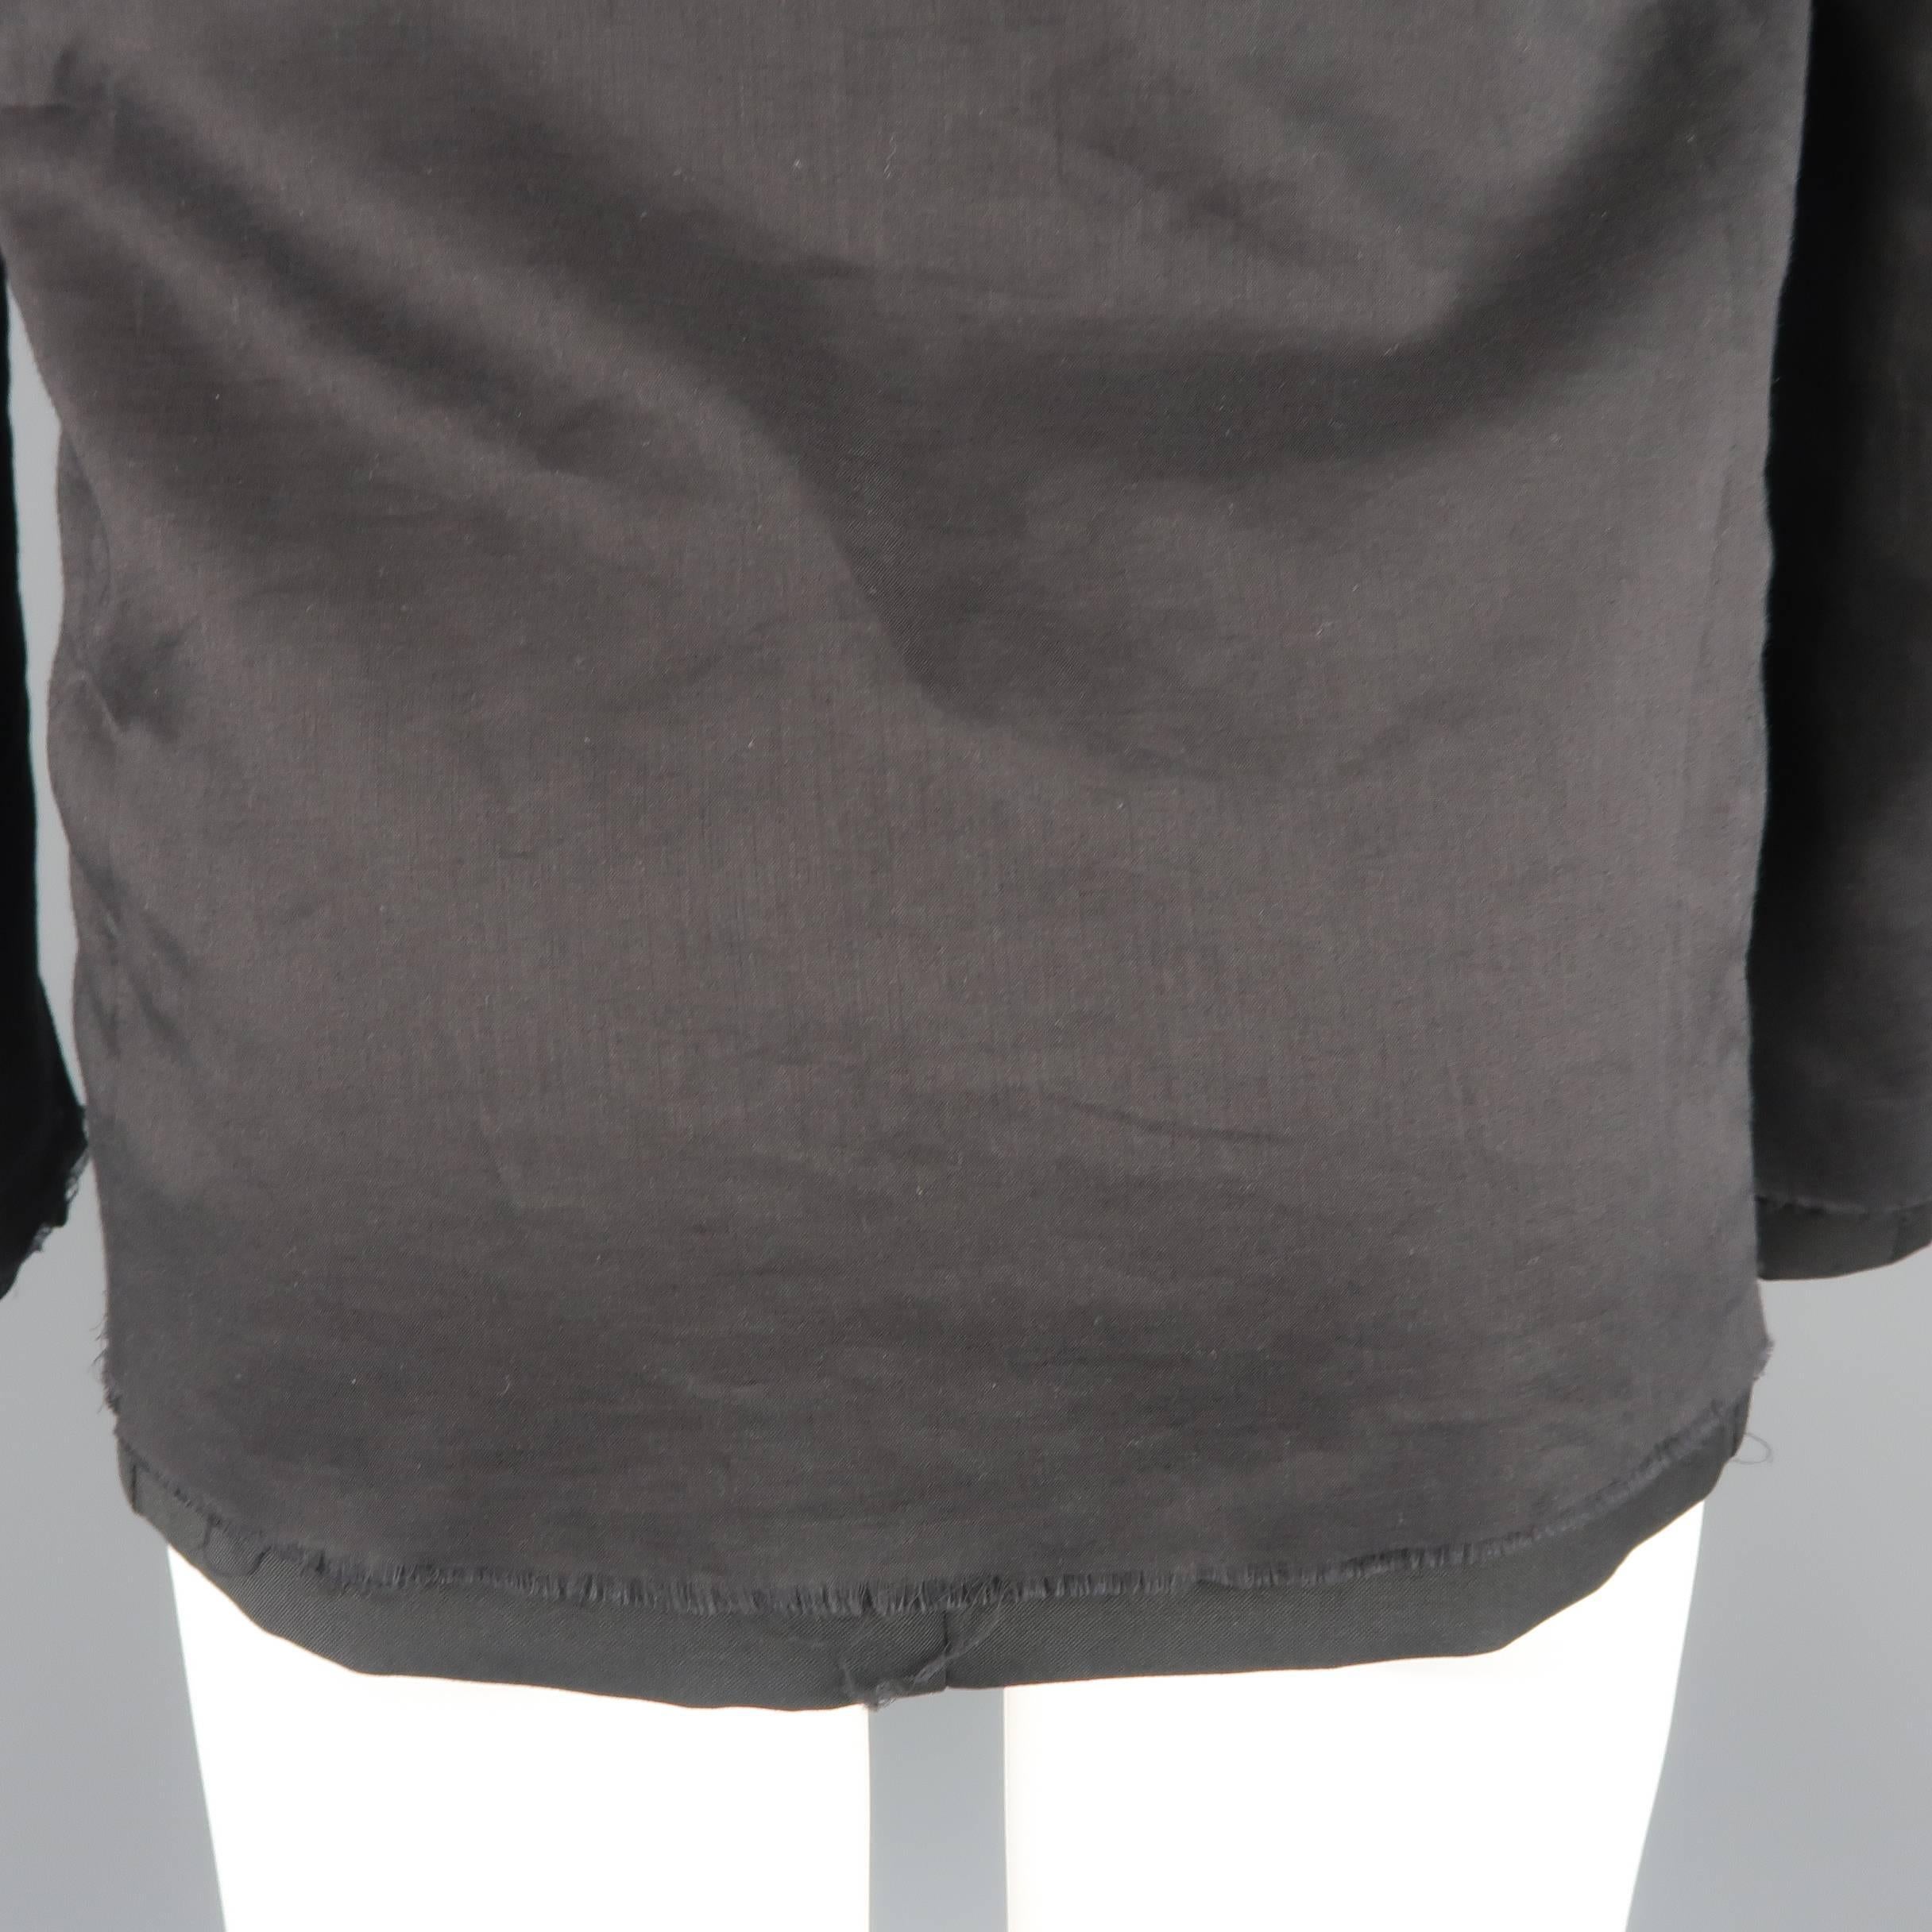 KRIS VAN ASSCHE 36 Regular Black Layered Raw Edge Wool Sport Coat Jacket 1